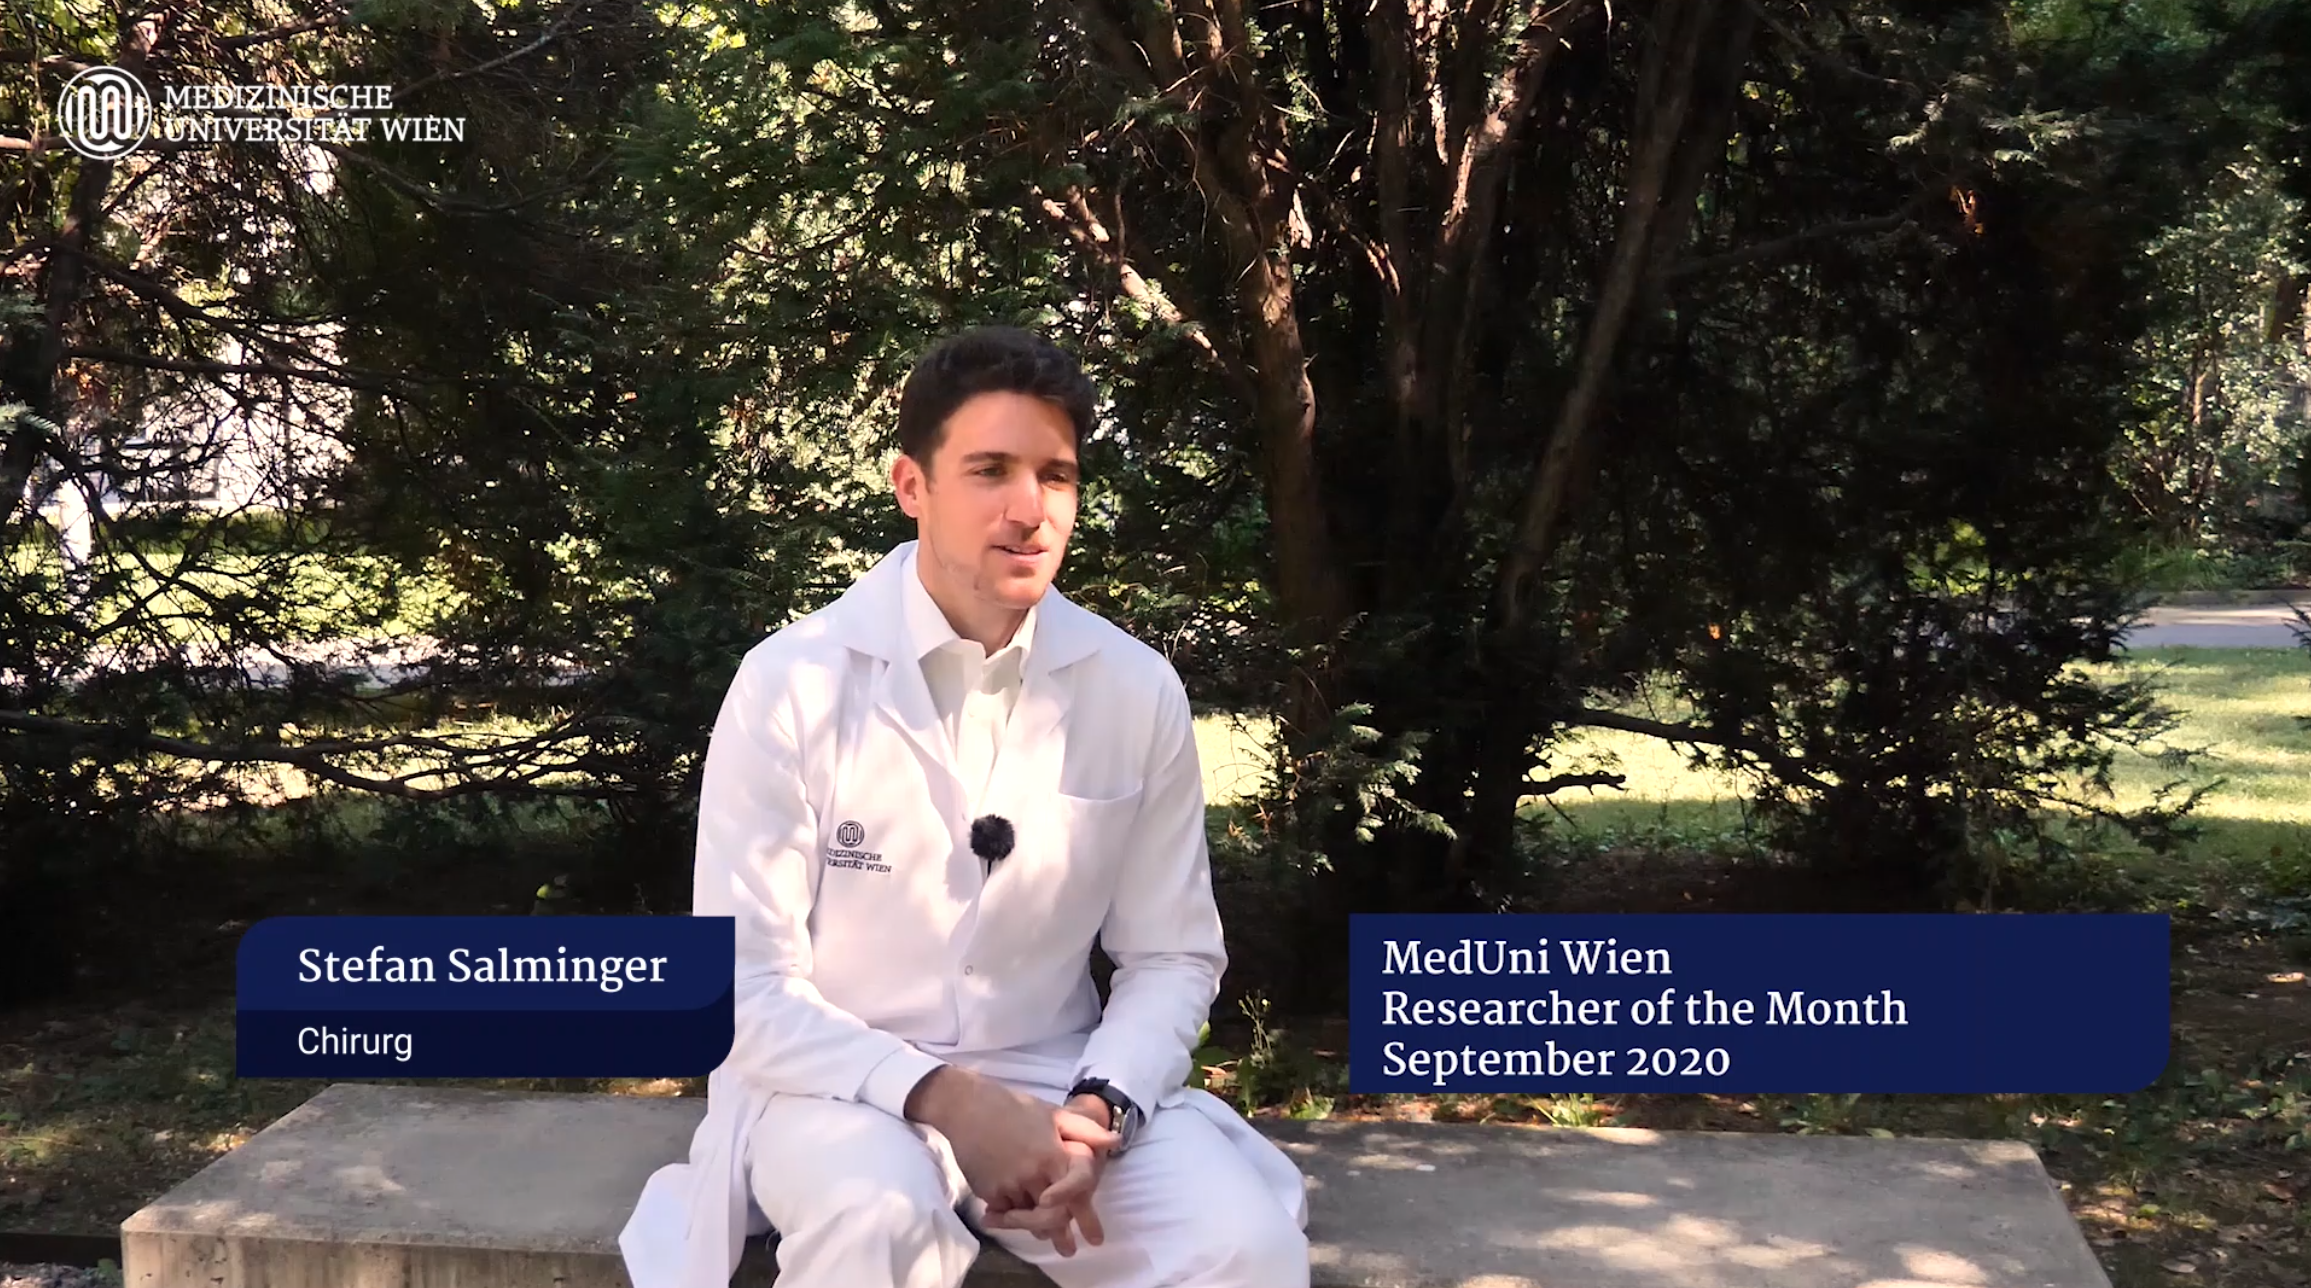 VIDEO: MedUni Wien RoM September 2020: Stefan Salminger